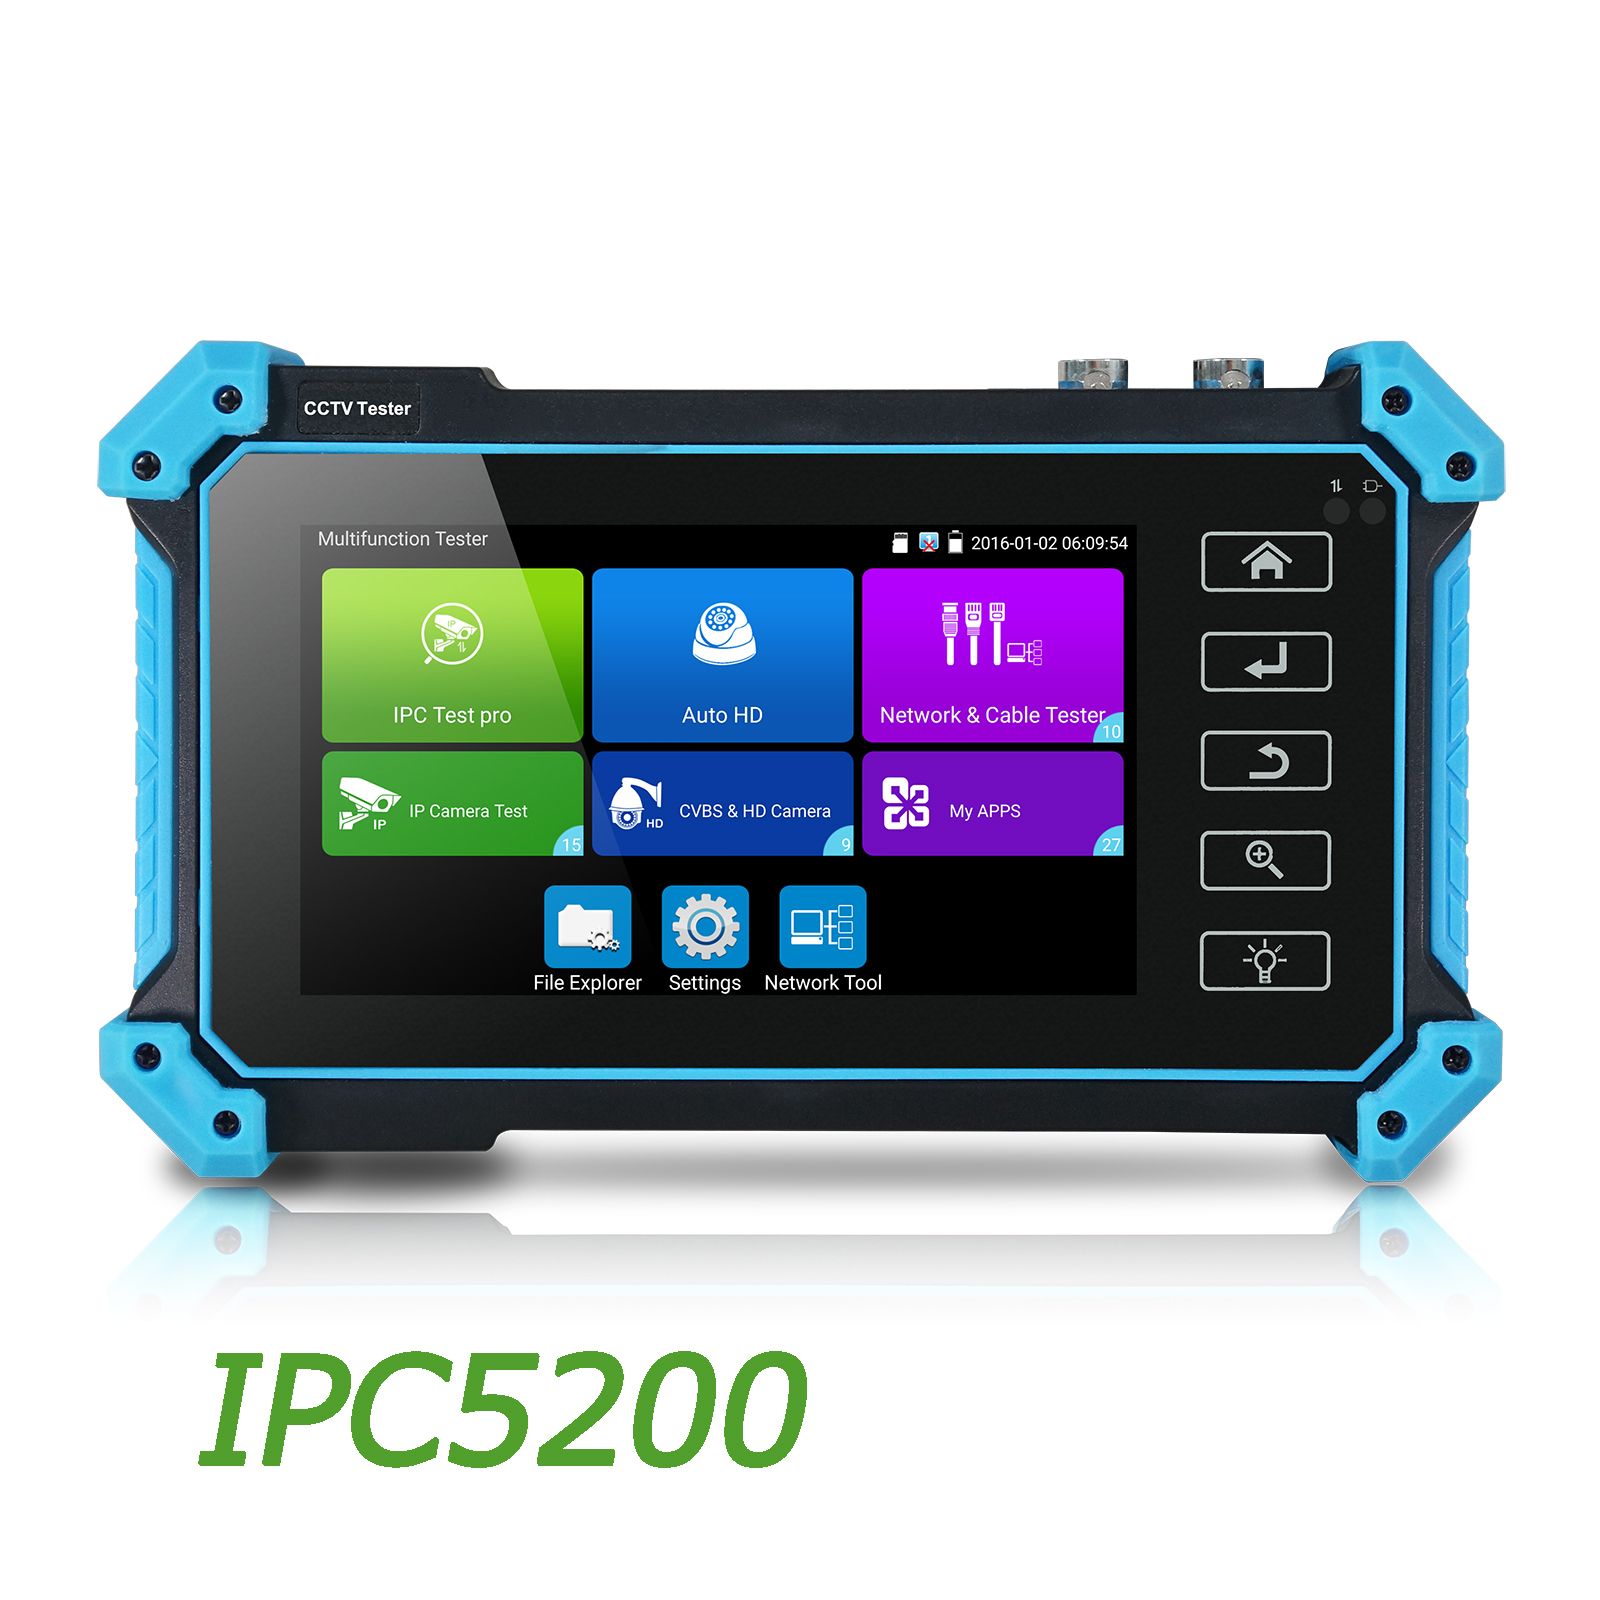 IPC5200